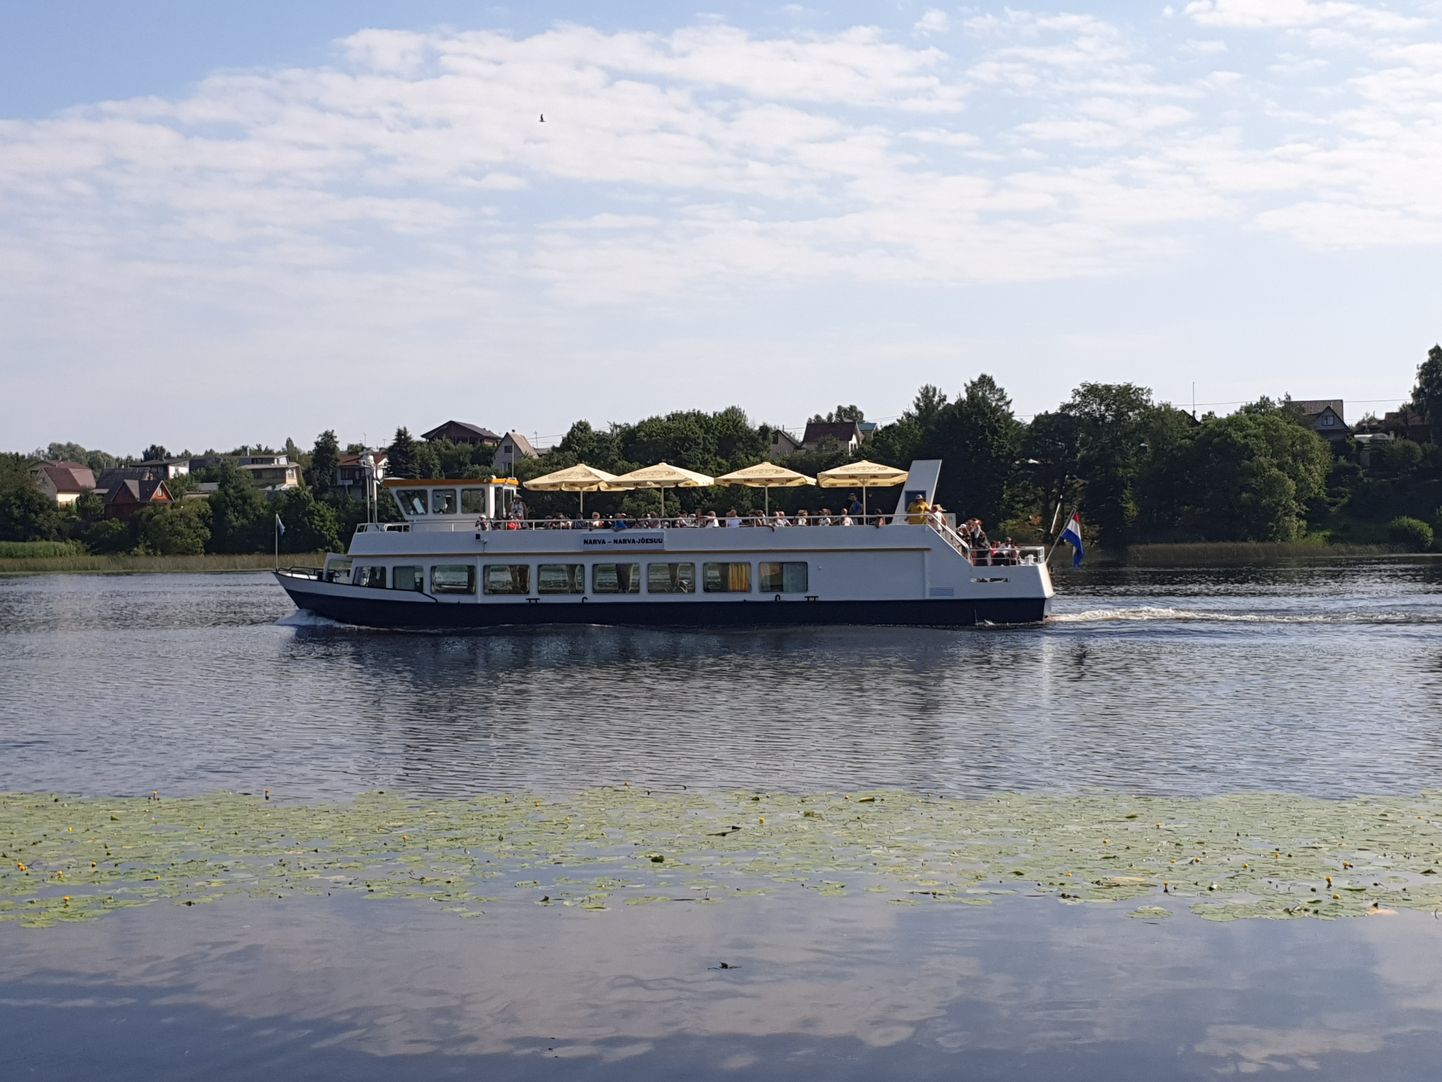 Jõelaev Catharina kurseerib piiriveekoguks oleval Narva jõel Narva linna ja Narva-Jõesuu vahel